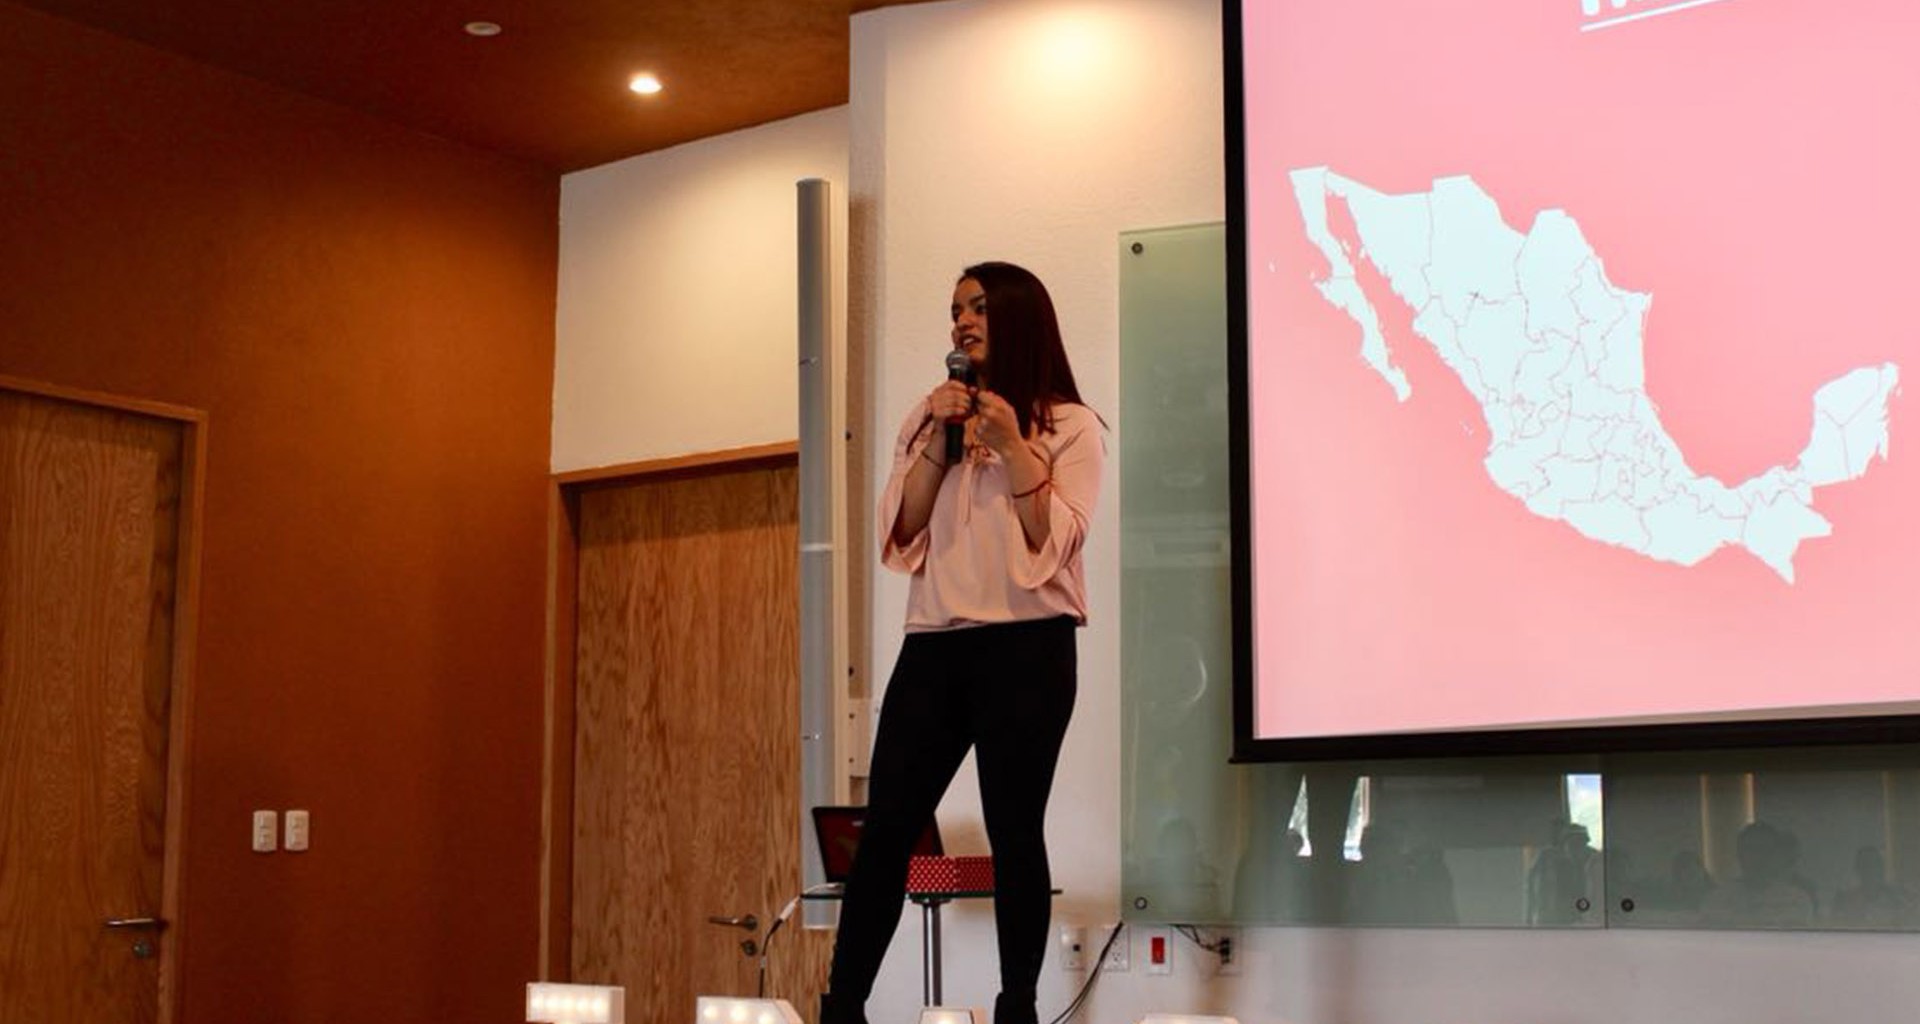 Egresada Tec busca ser una de las 10 mil mujeres de impacto en México